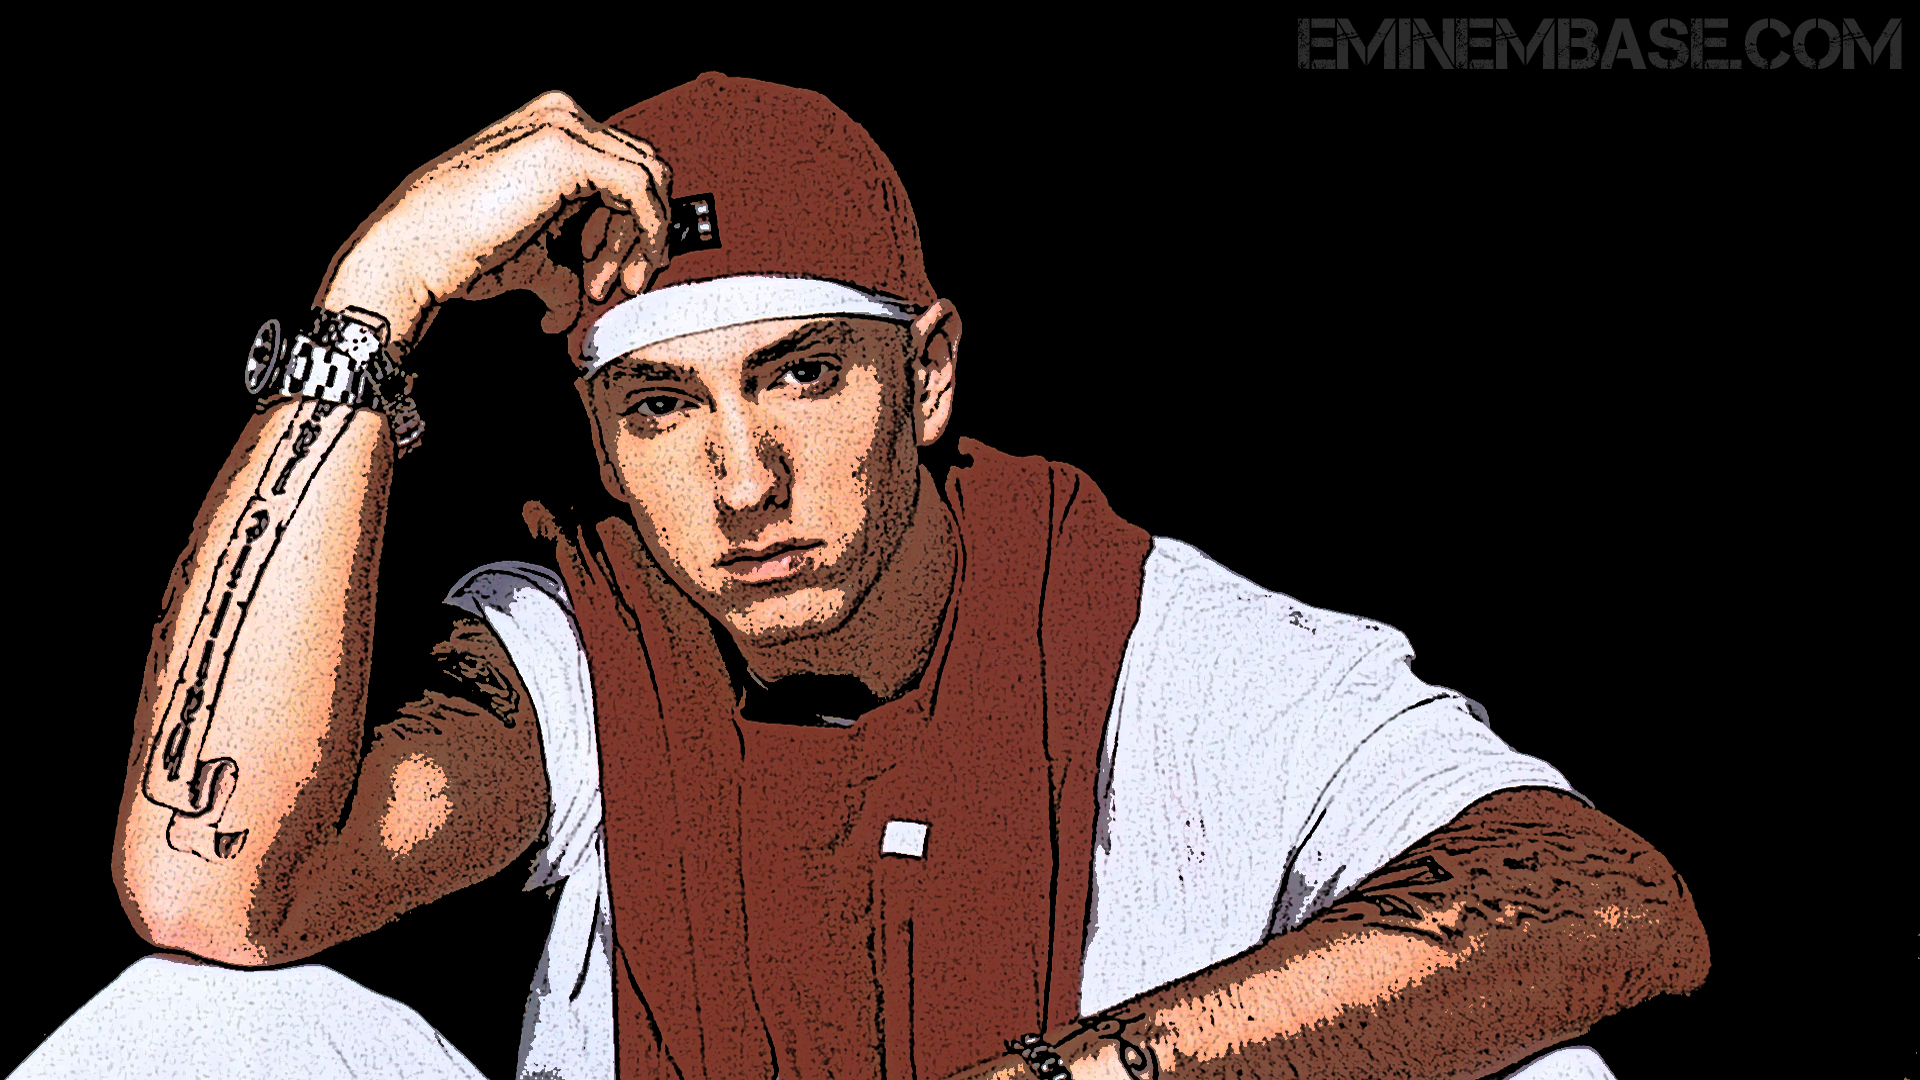 [76+] Eminem Wallpapers Hd | WallpaperSafari.com